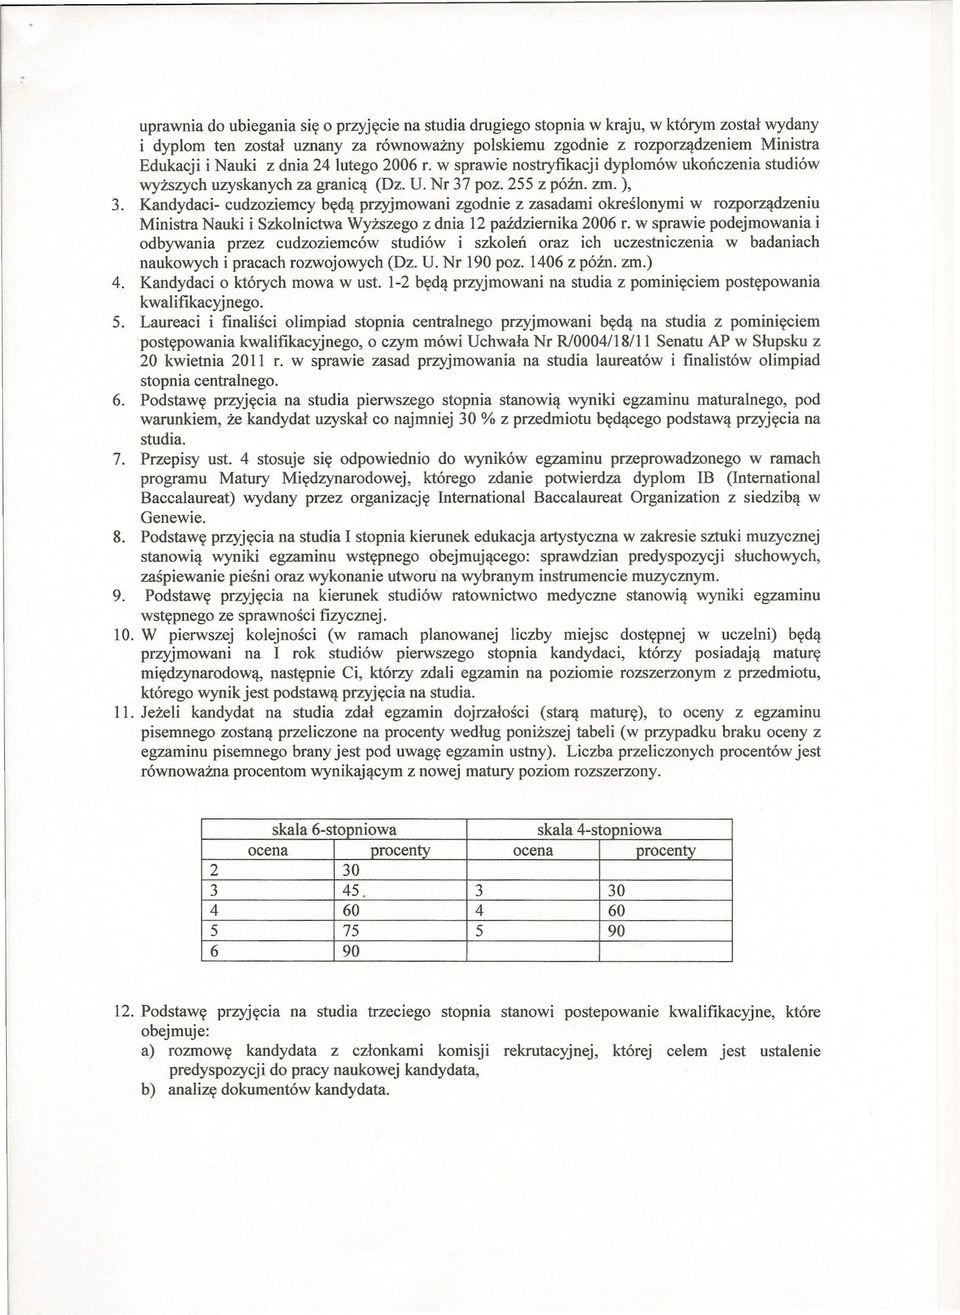 Kandydaci- cudzoziemcy będą przyjmowani zgodnie z zasadami określonymi w rozporządzeniu Ministra Nauki i Szkolnictwa Wyższego z dnia 12 października 2006 r.